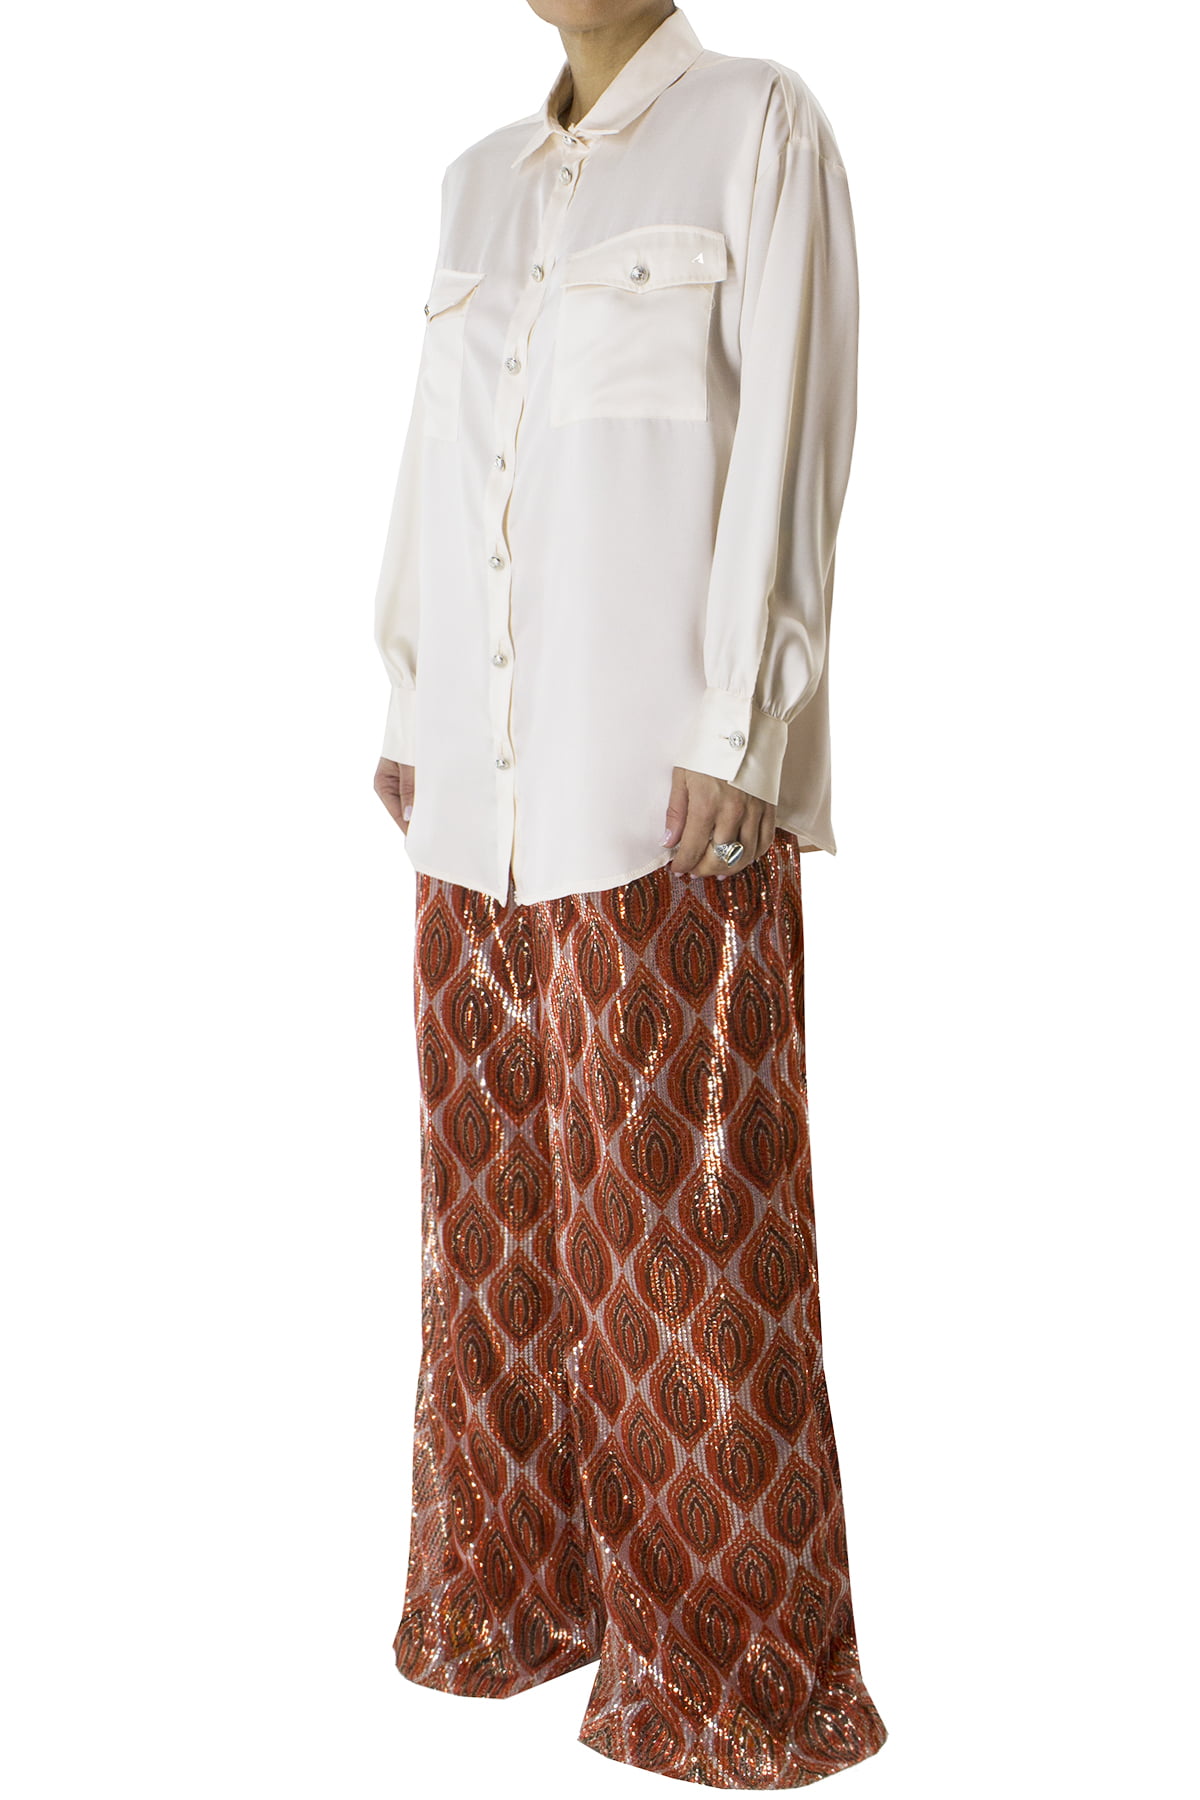 Camicia donna in cotone morbido oversize con tasconi e bottoni argento manica a sbuffo